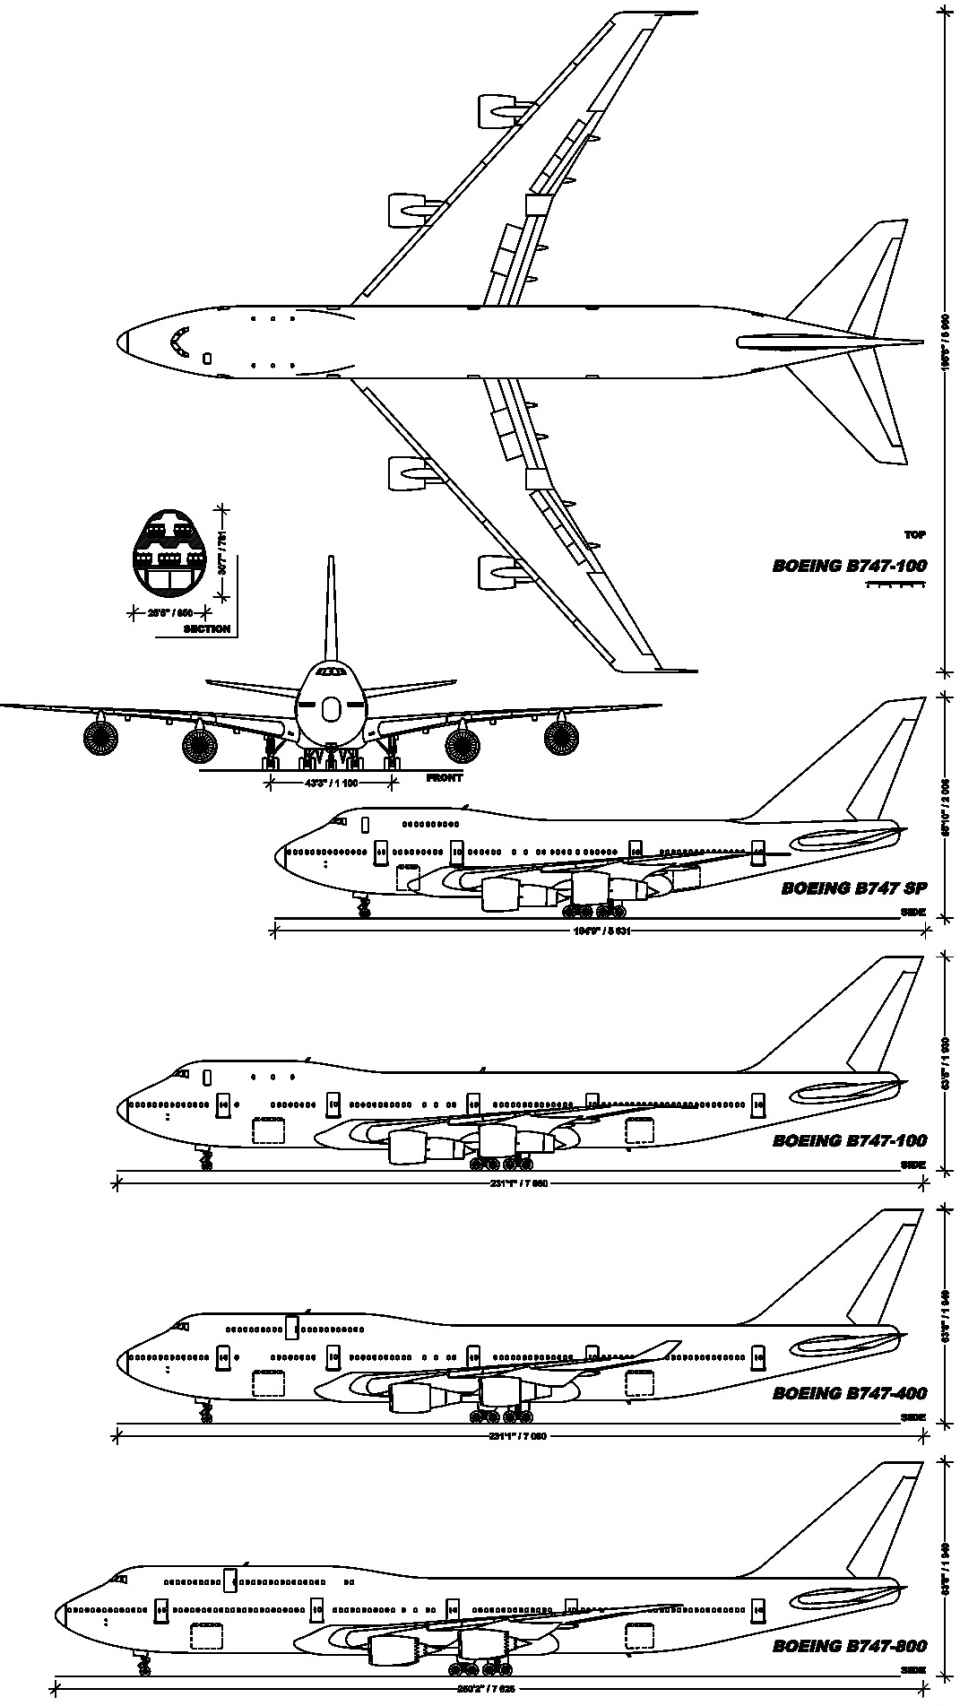 Variantes del 747 a lo largo de su historia.